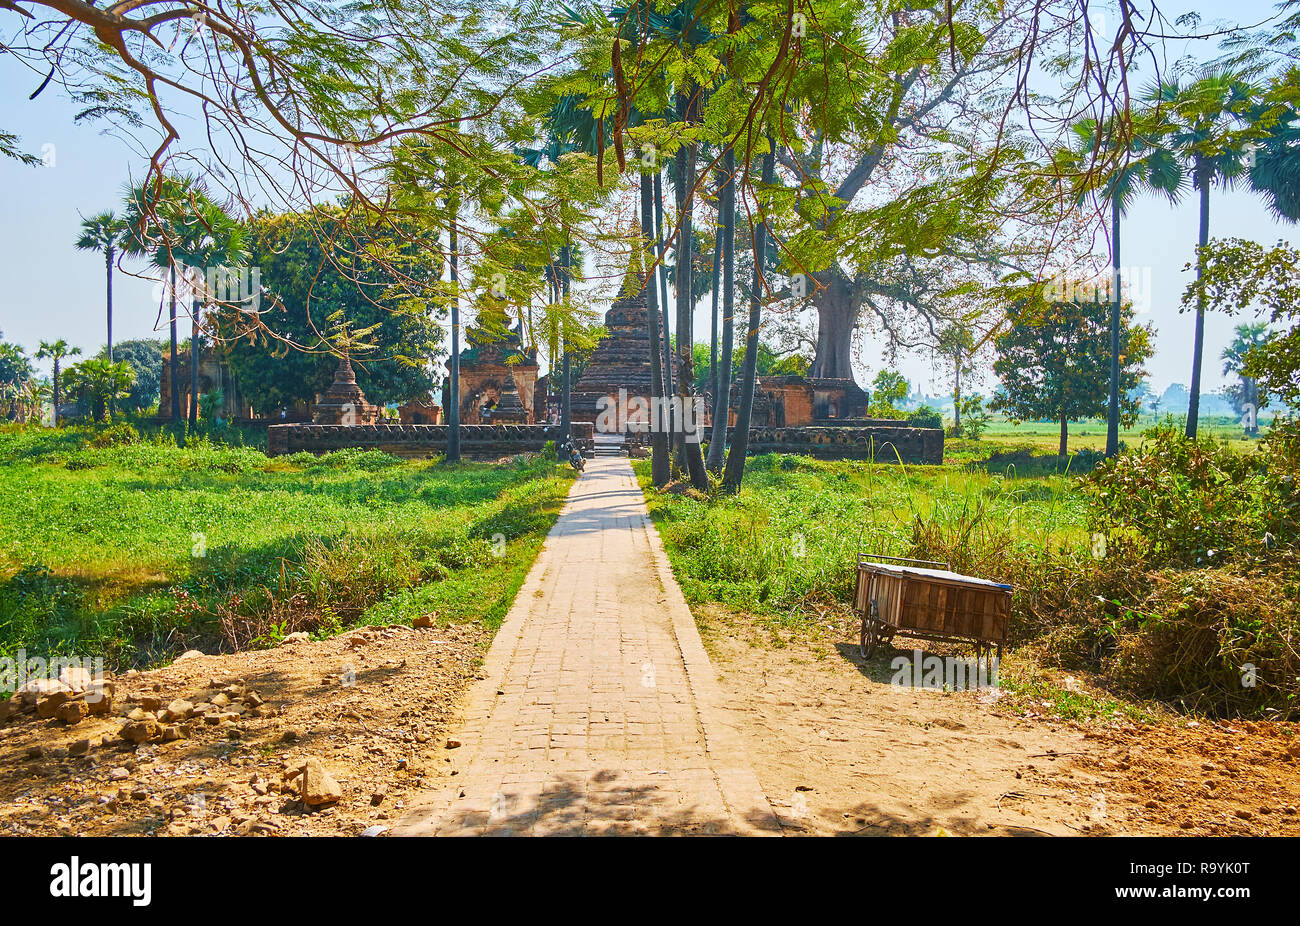 La luxuriante verdure tropic masque le Yandana Sinme ancienne pagode en brique rouge, entouré de terres agricoles et de champs peddy, Ava (Inwa), le Myanmar. Banque D'Images